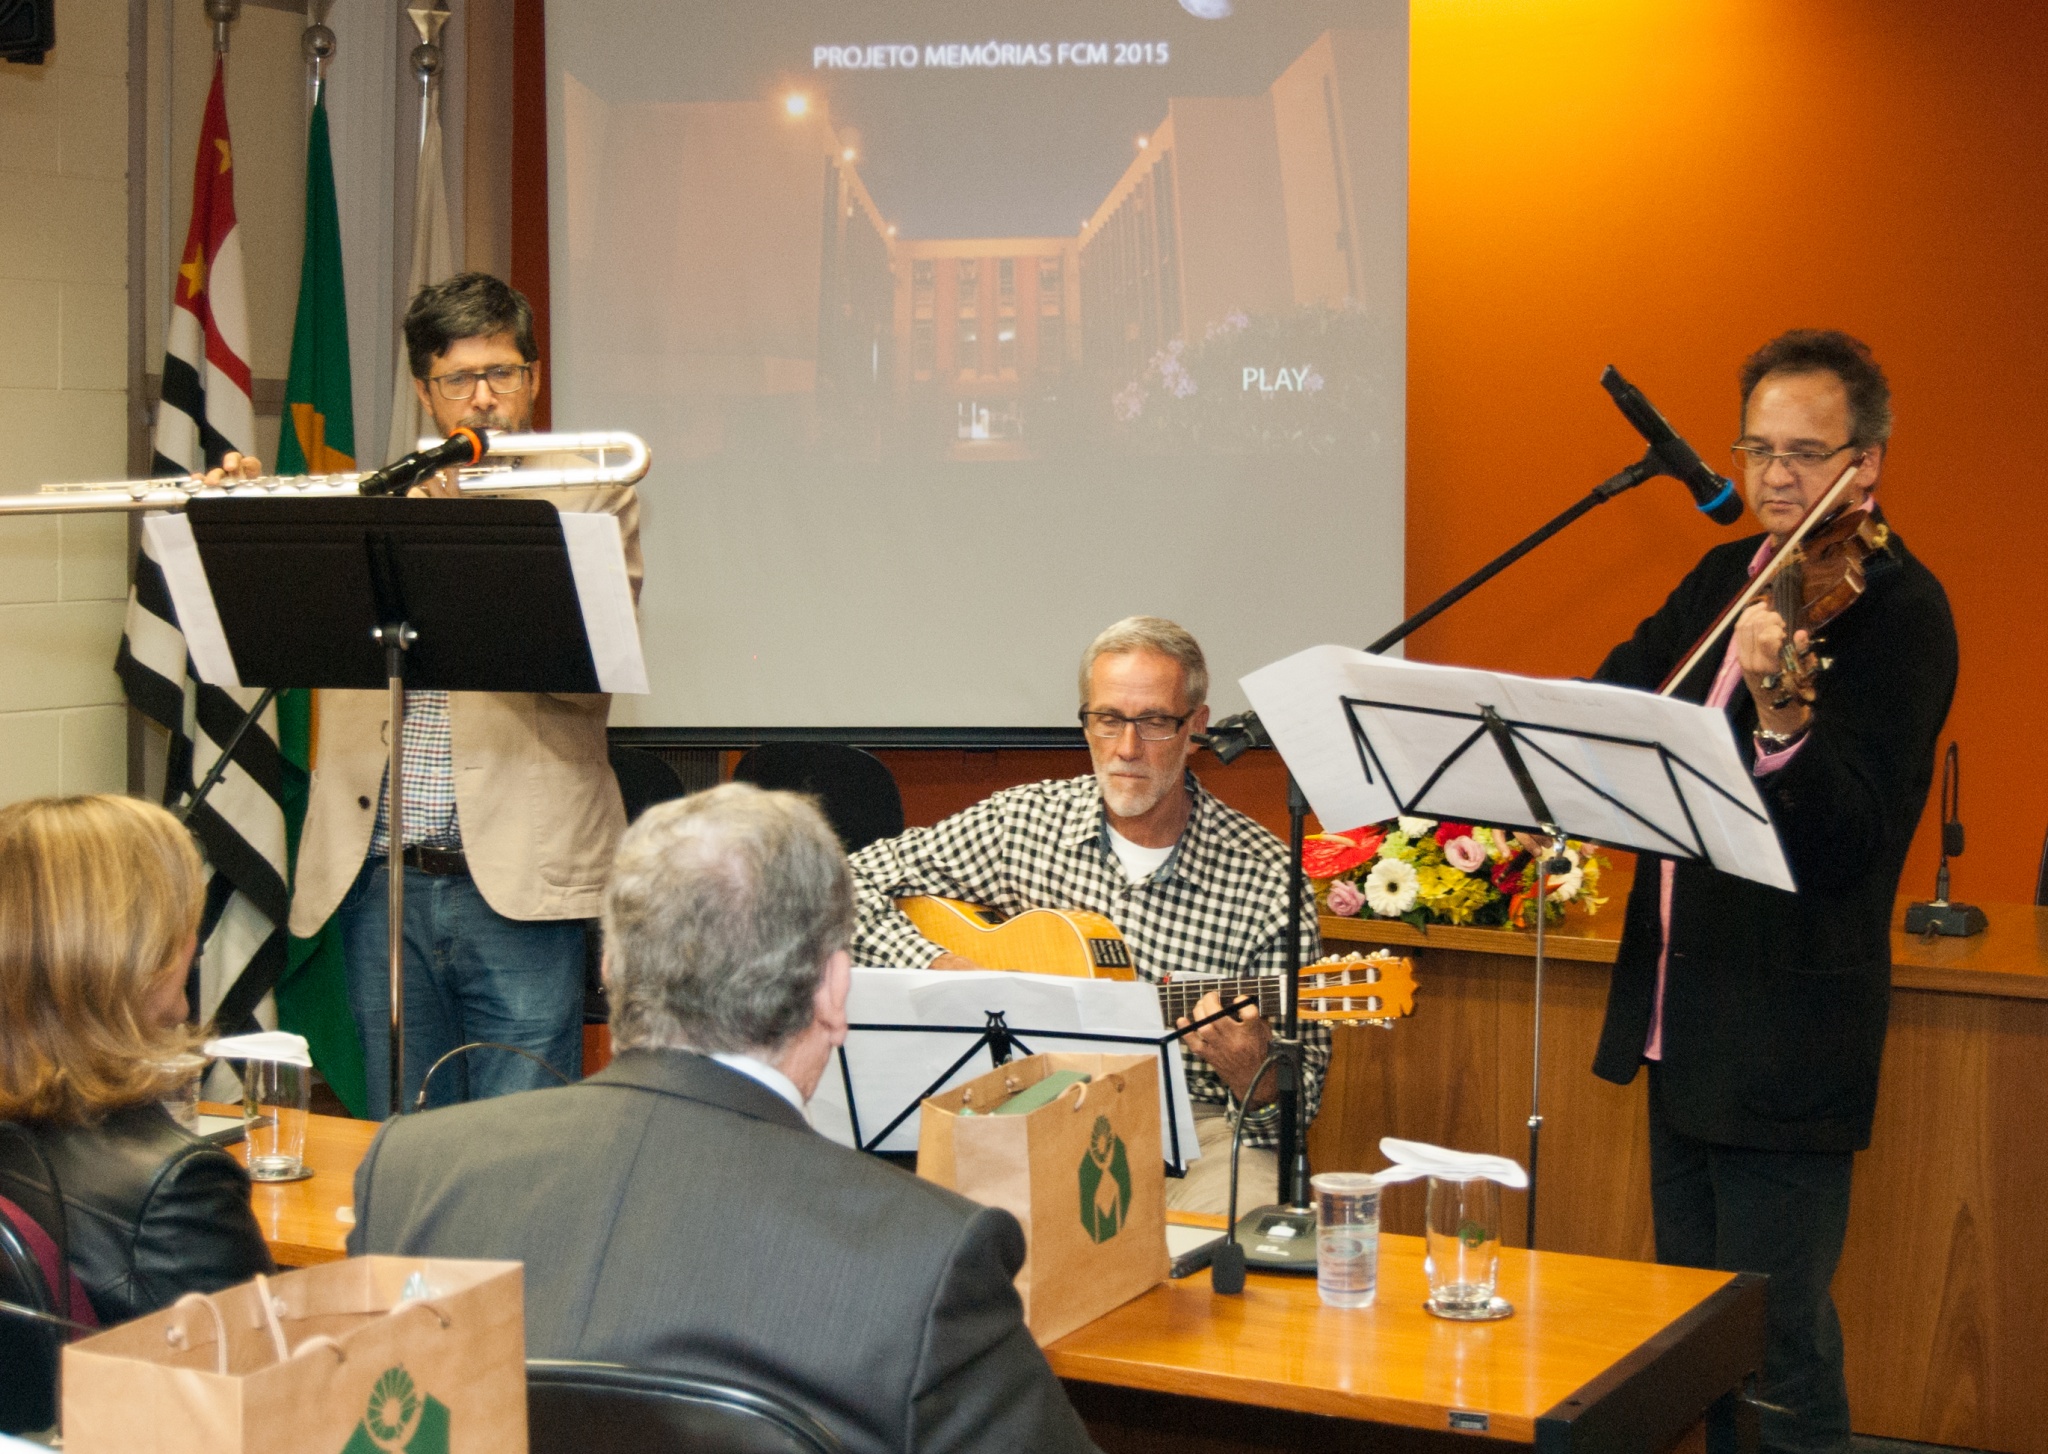 Projeto Memórias FCM tem cerimônia de homenagem a docentes e funcionários aposentados/Foto: Rafael Marques